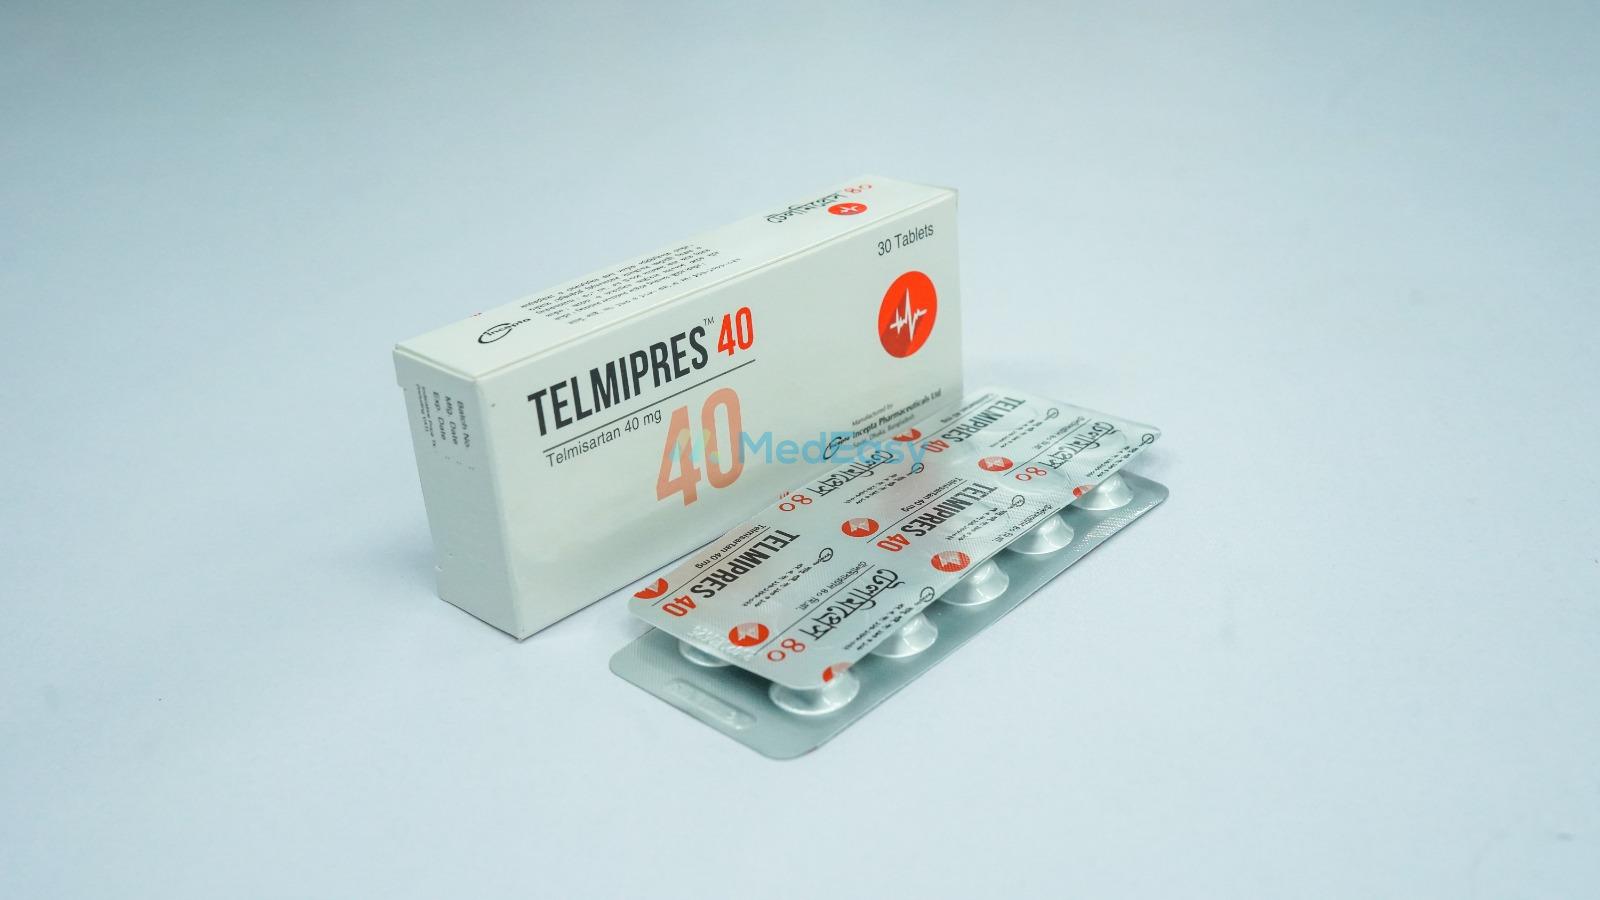 Telmipres